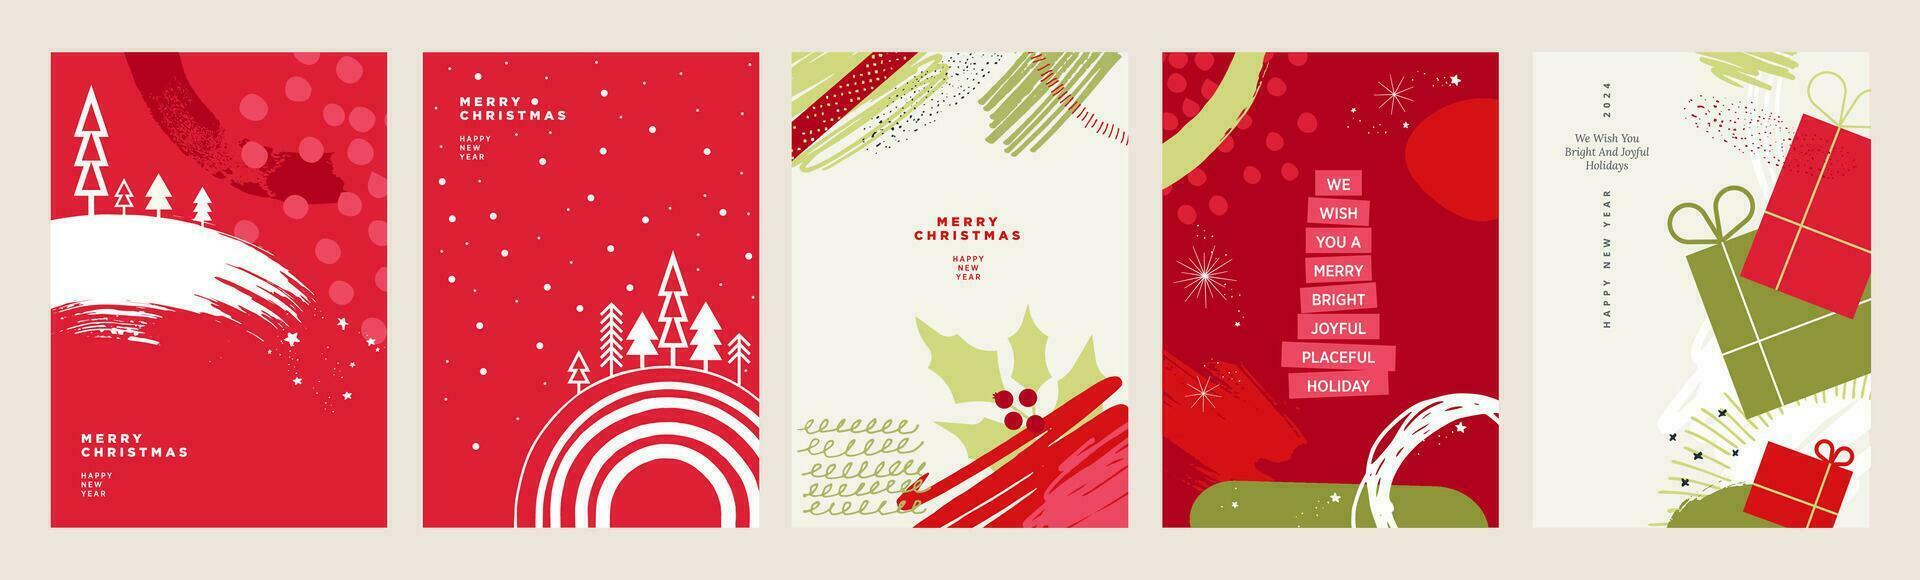 conjunto de cartões de natal e ano novo. conceitos de ilustração vetorial para design gráfico e web, banner de mídia social, material de marketing. vetor